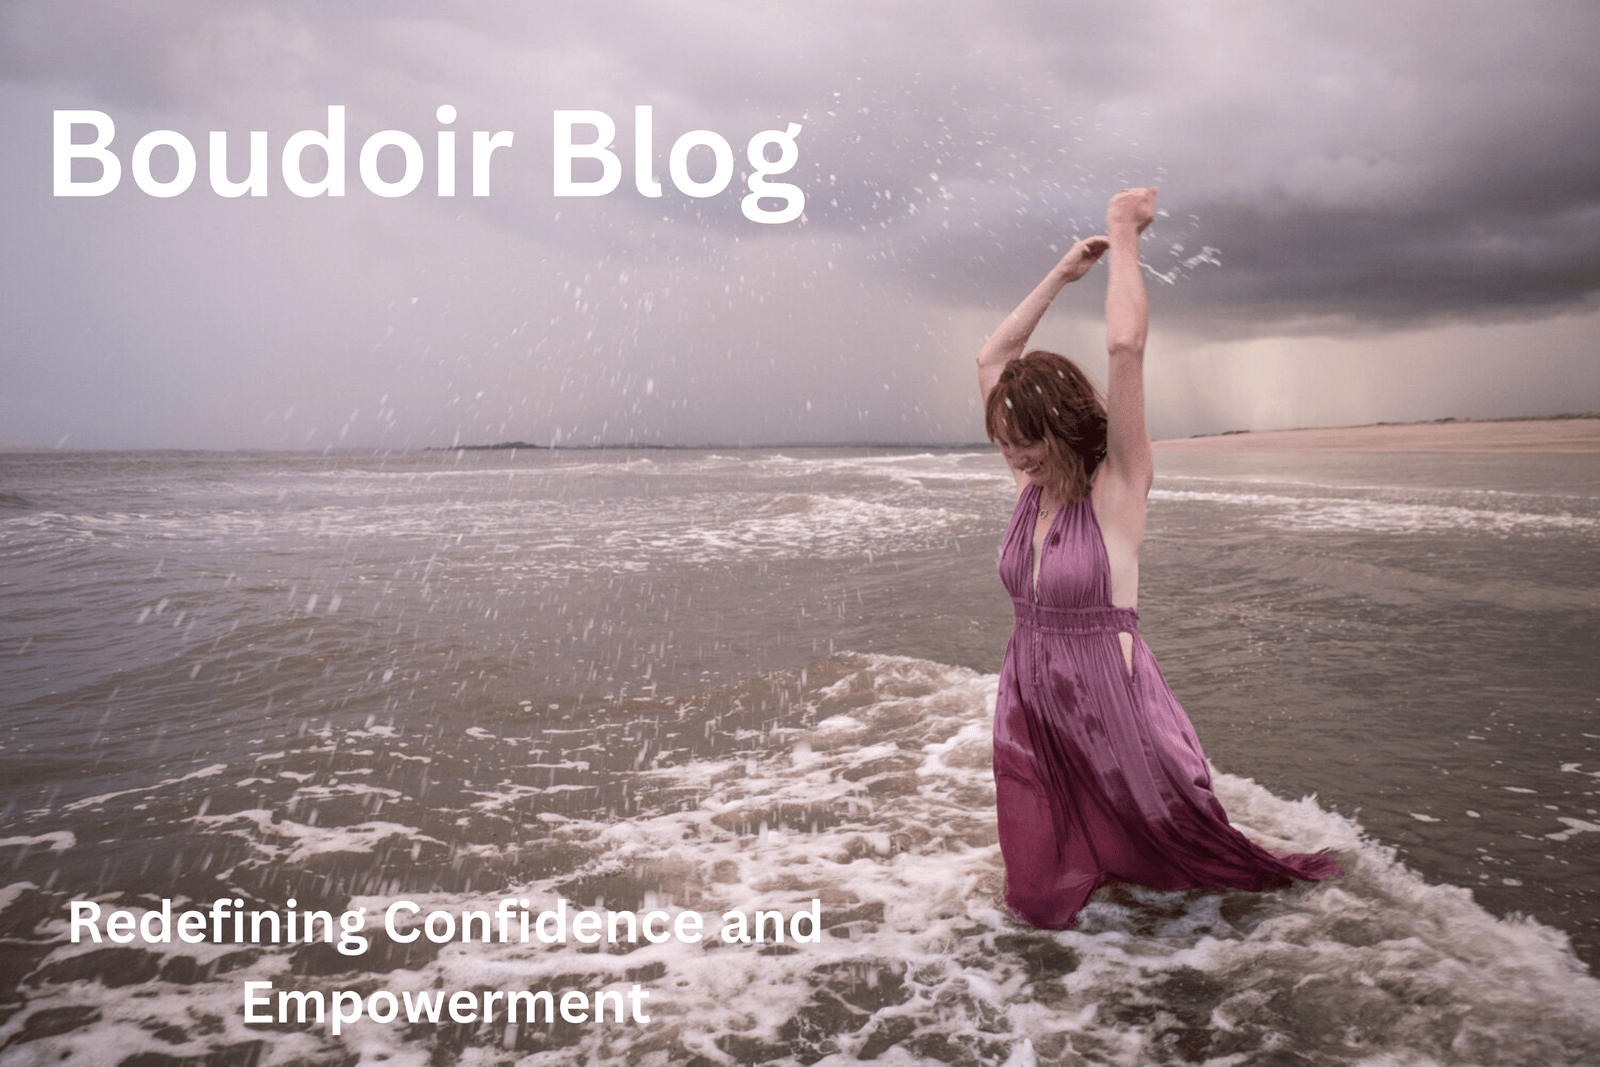 Boudoir Blog